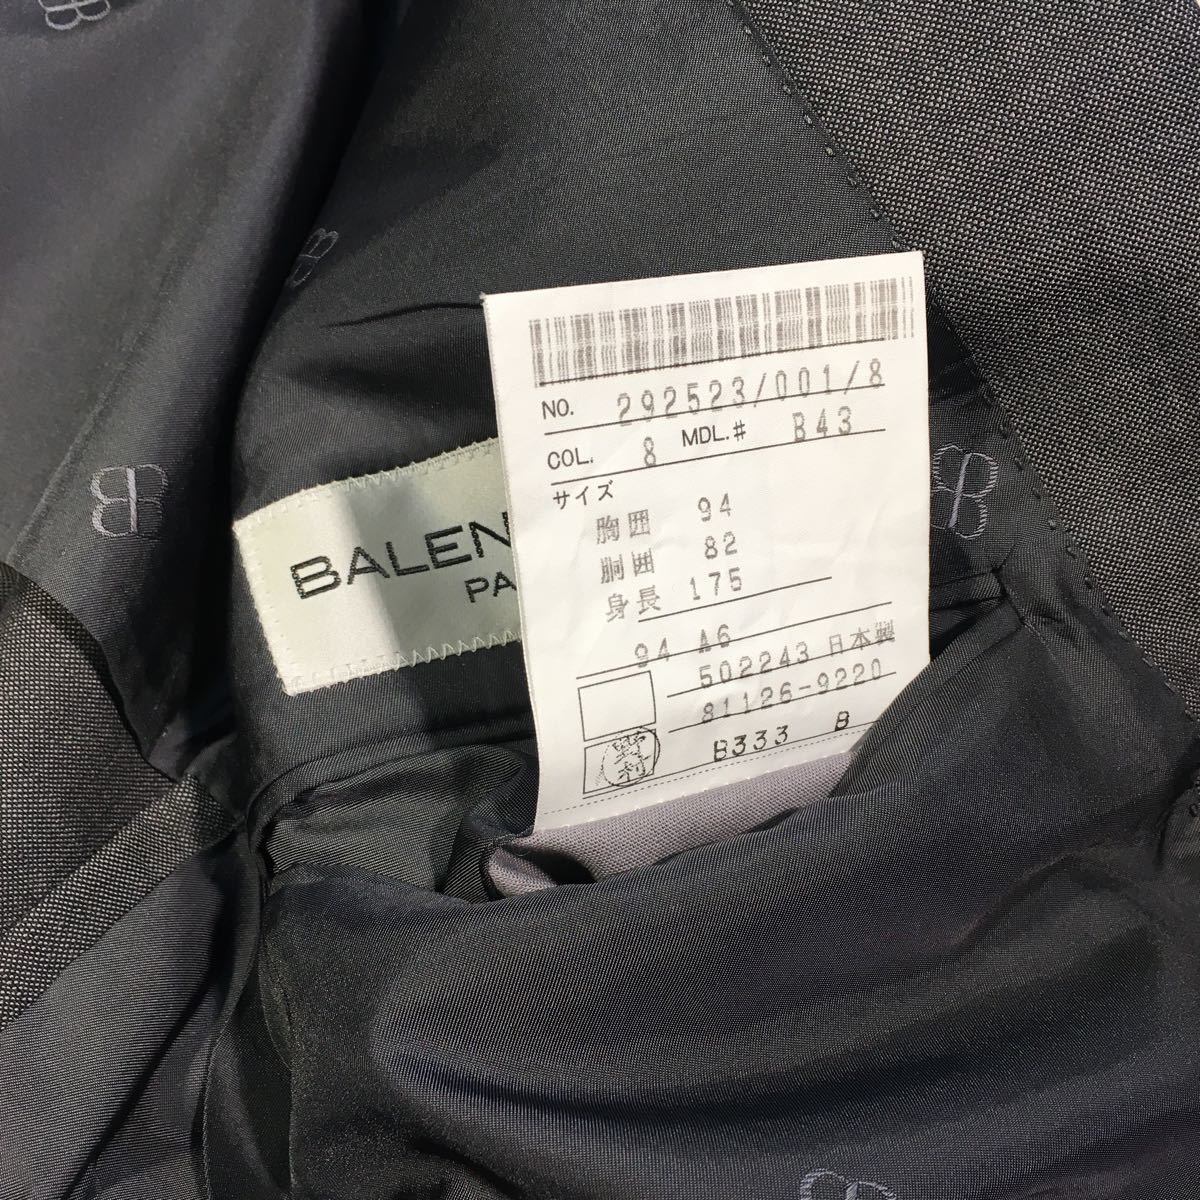 新品本物タグ付きBALENCIAGA Parisビンテージダブルテーラードジャケット 光沢ダークグレー系 サイズ A6日本製メリノウール100% レアの画像8